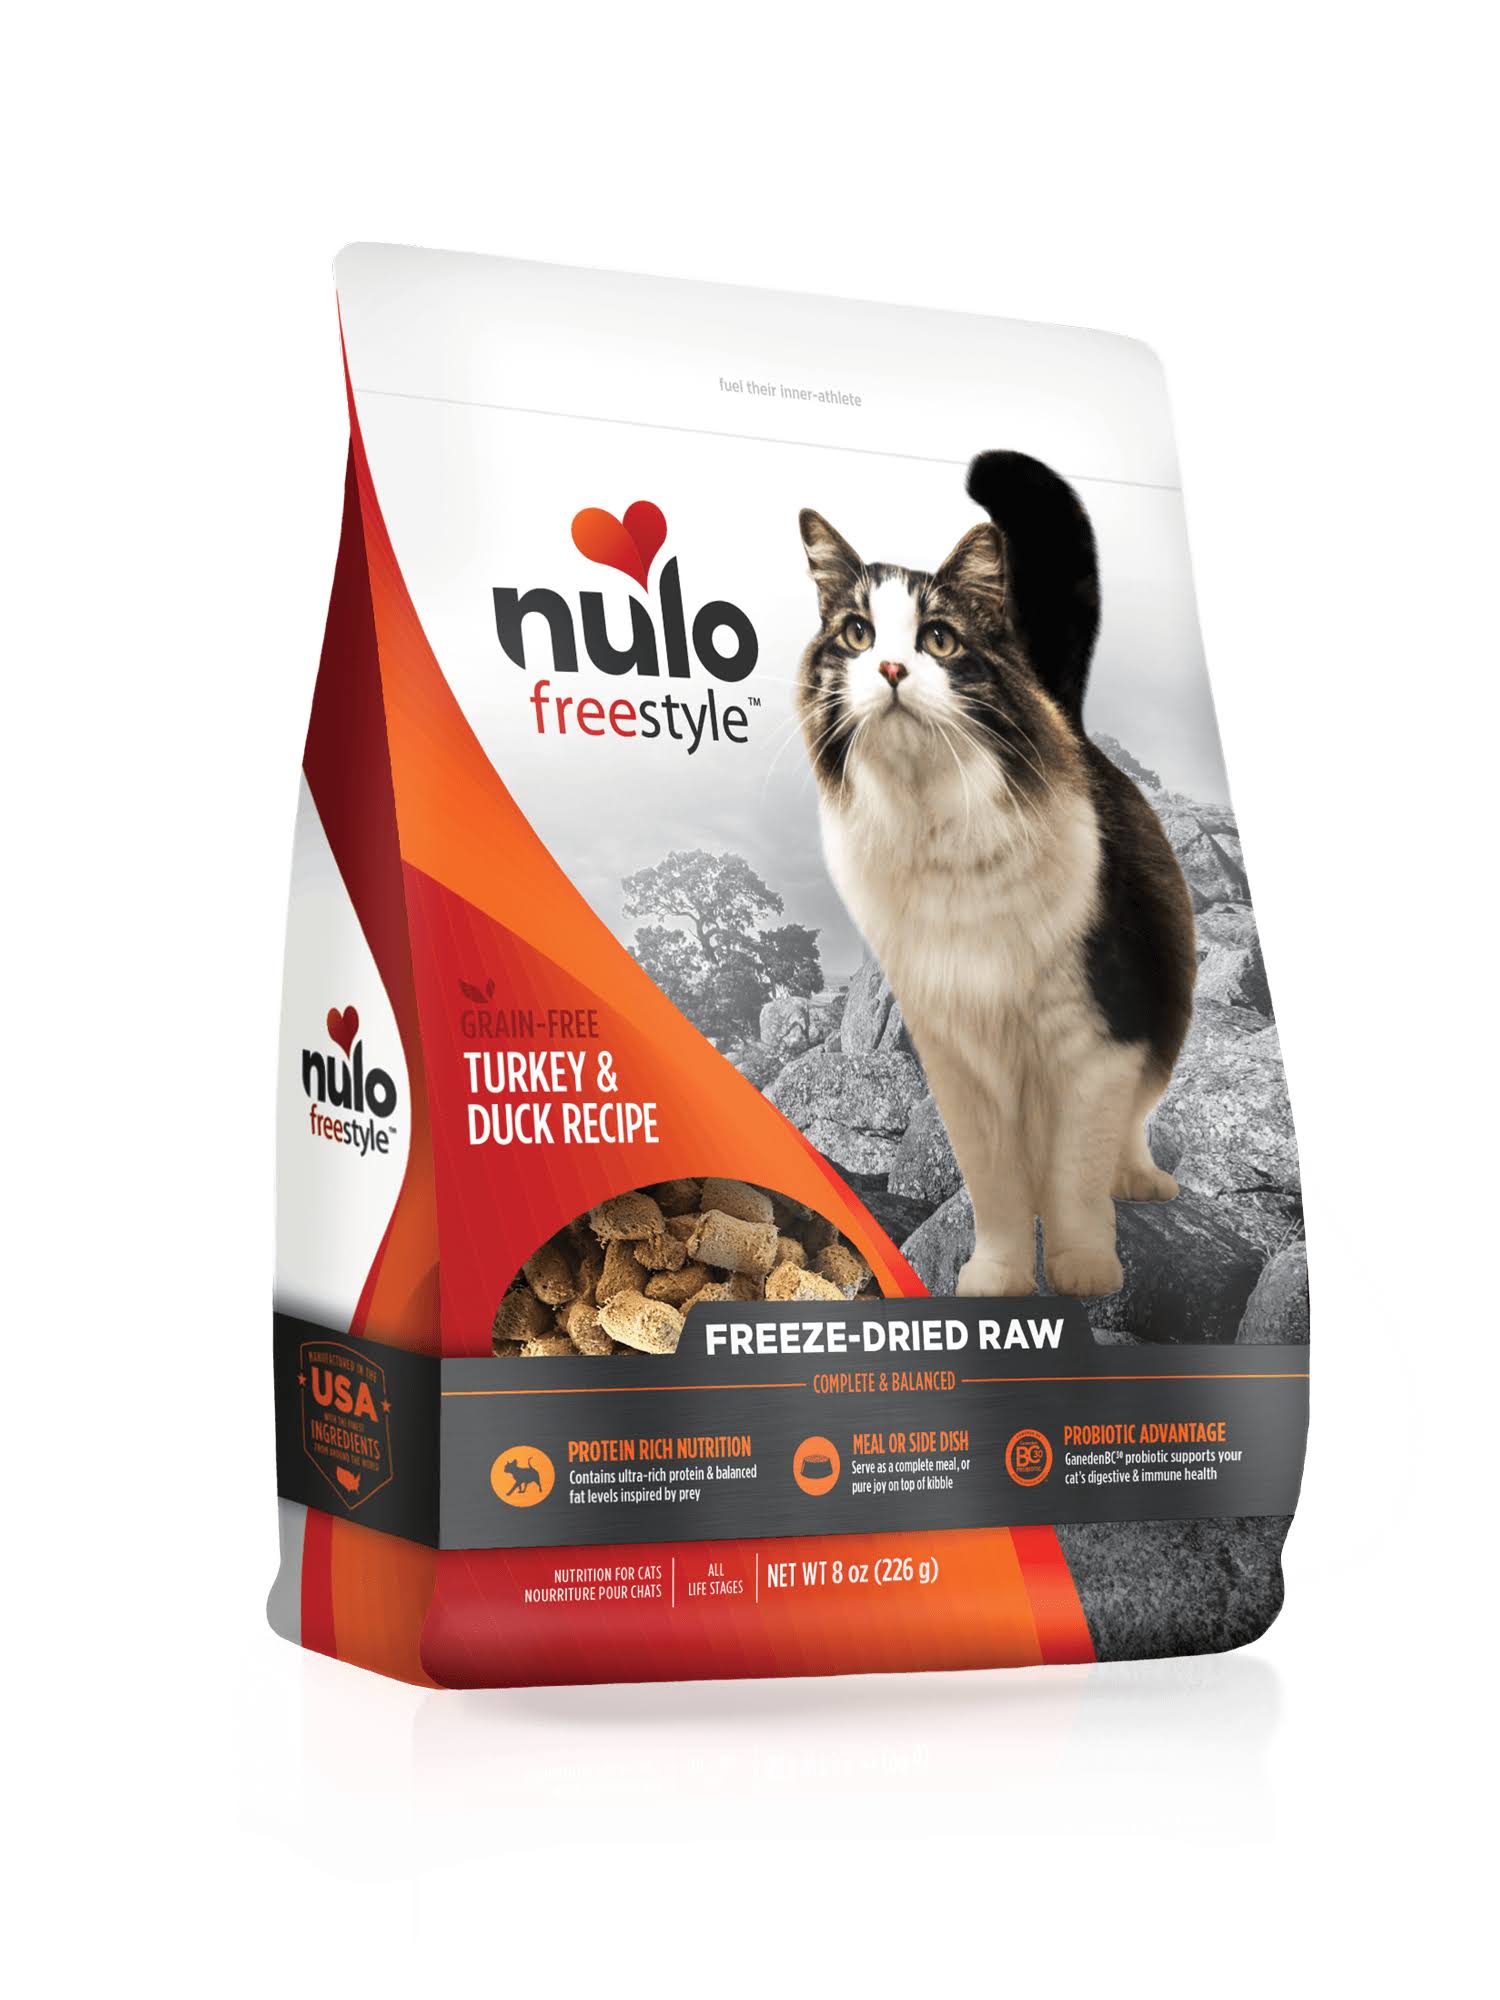 Nulo Freestyle Turkey & Duck Freeze-Dried Raw Cat Food, 8-oz